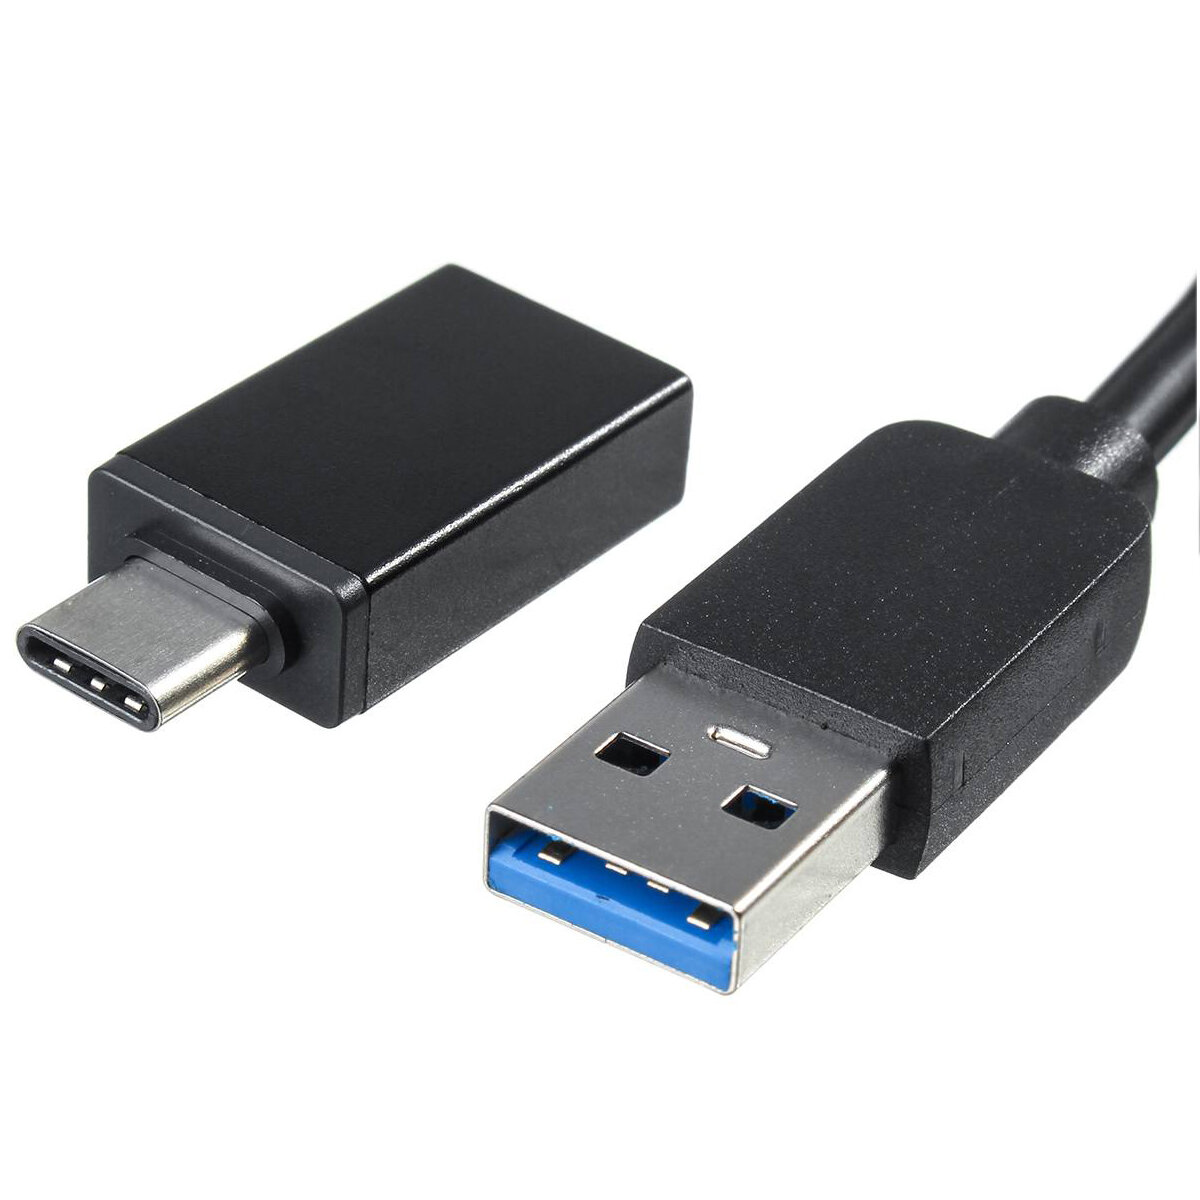 Type-C USB 3.0外付けDVDバーナーライターレコーダープレーヤーDVD RW光学ドライブラップトップWindows XP / 7/8/10コンピュータ用CD / DVD ROMプレーヤー